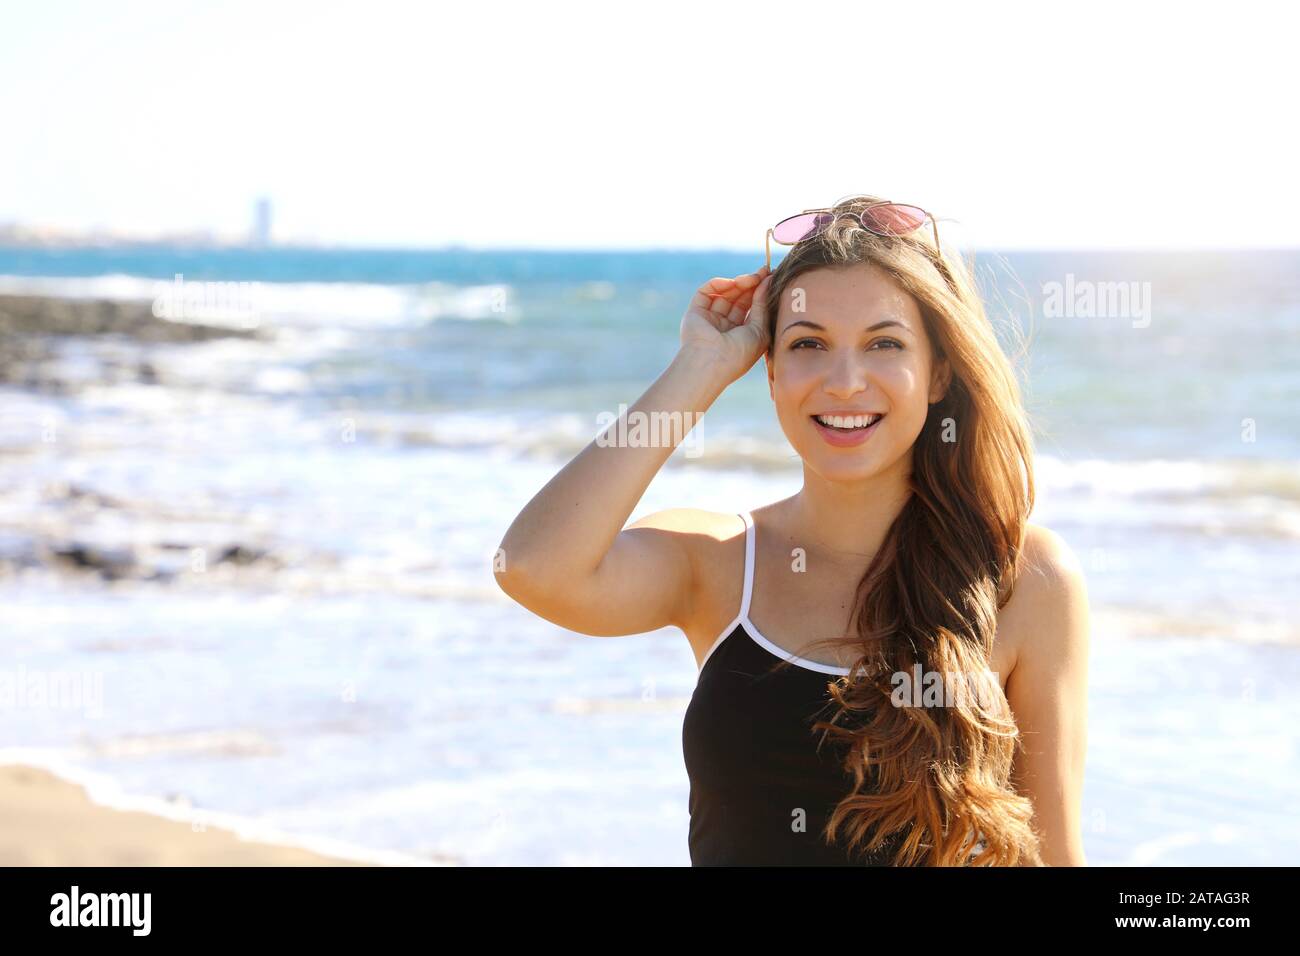 Jolie femme sportive moderne avec des lunettes de soleil sur sa tête regardant sourire heureux à l'appareil photo sur la plage Banque D'Images